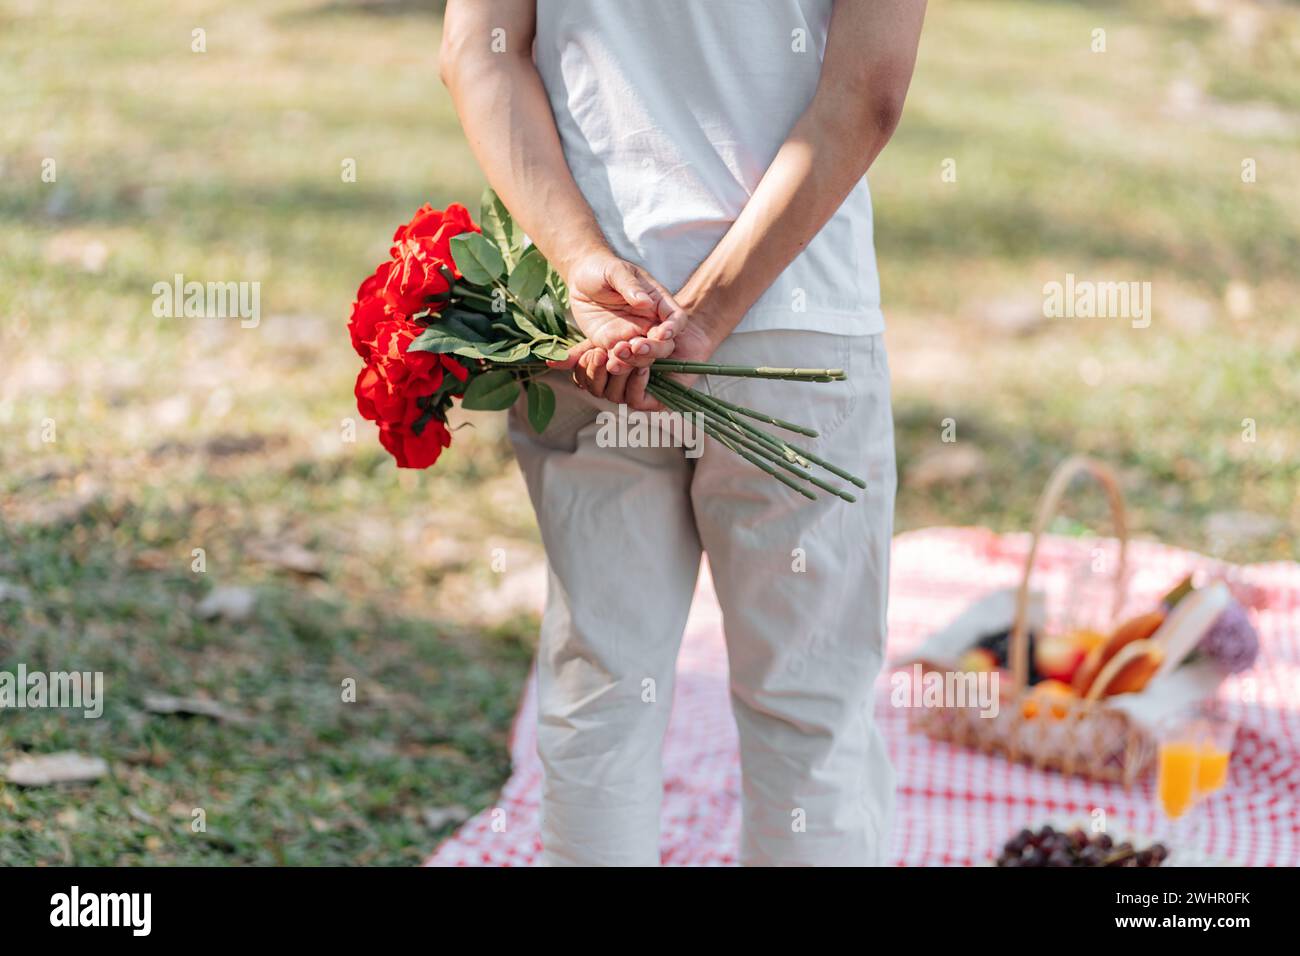 Glückliches romantisches Paar am Valentinstag asiatischer Mann, der rote Rosenblume hinter sich versteckt, um seine Freundin zu überraschen. Stockfoto